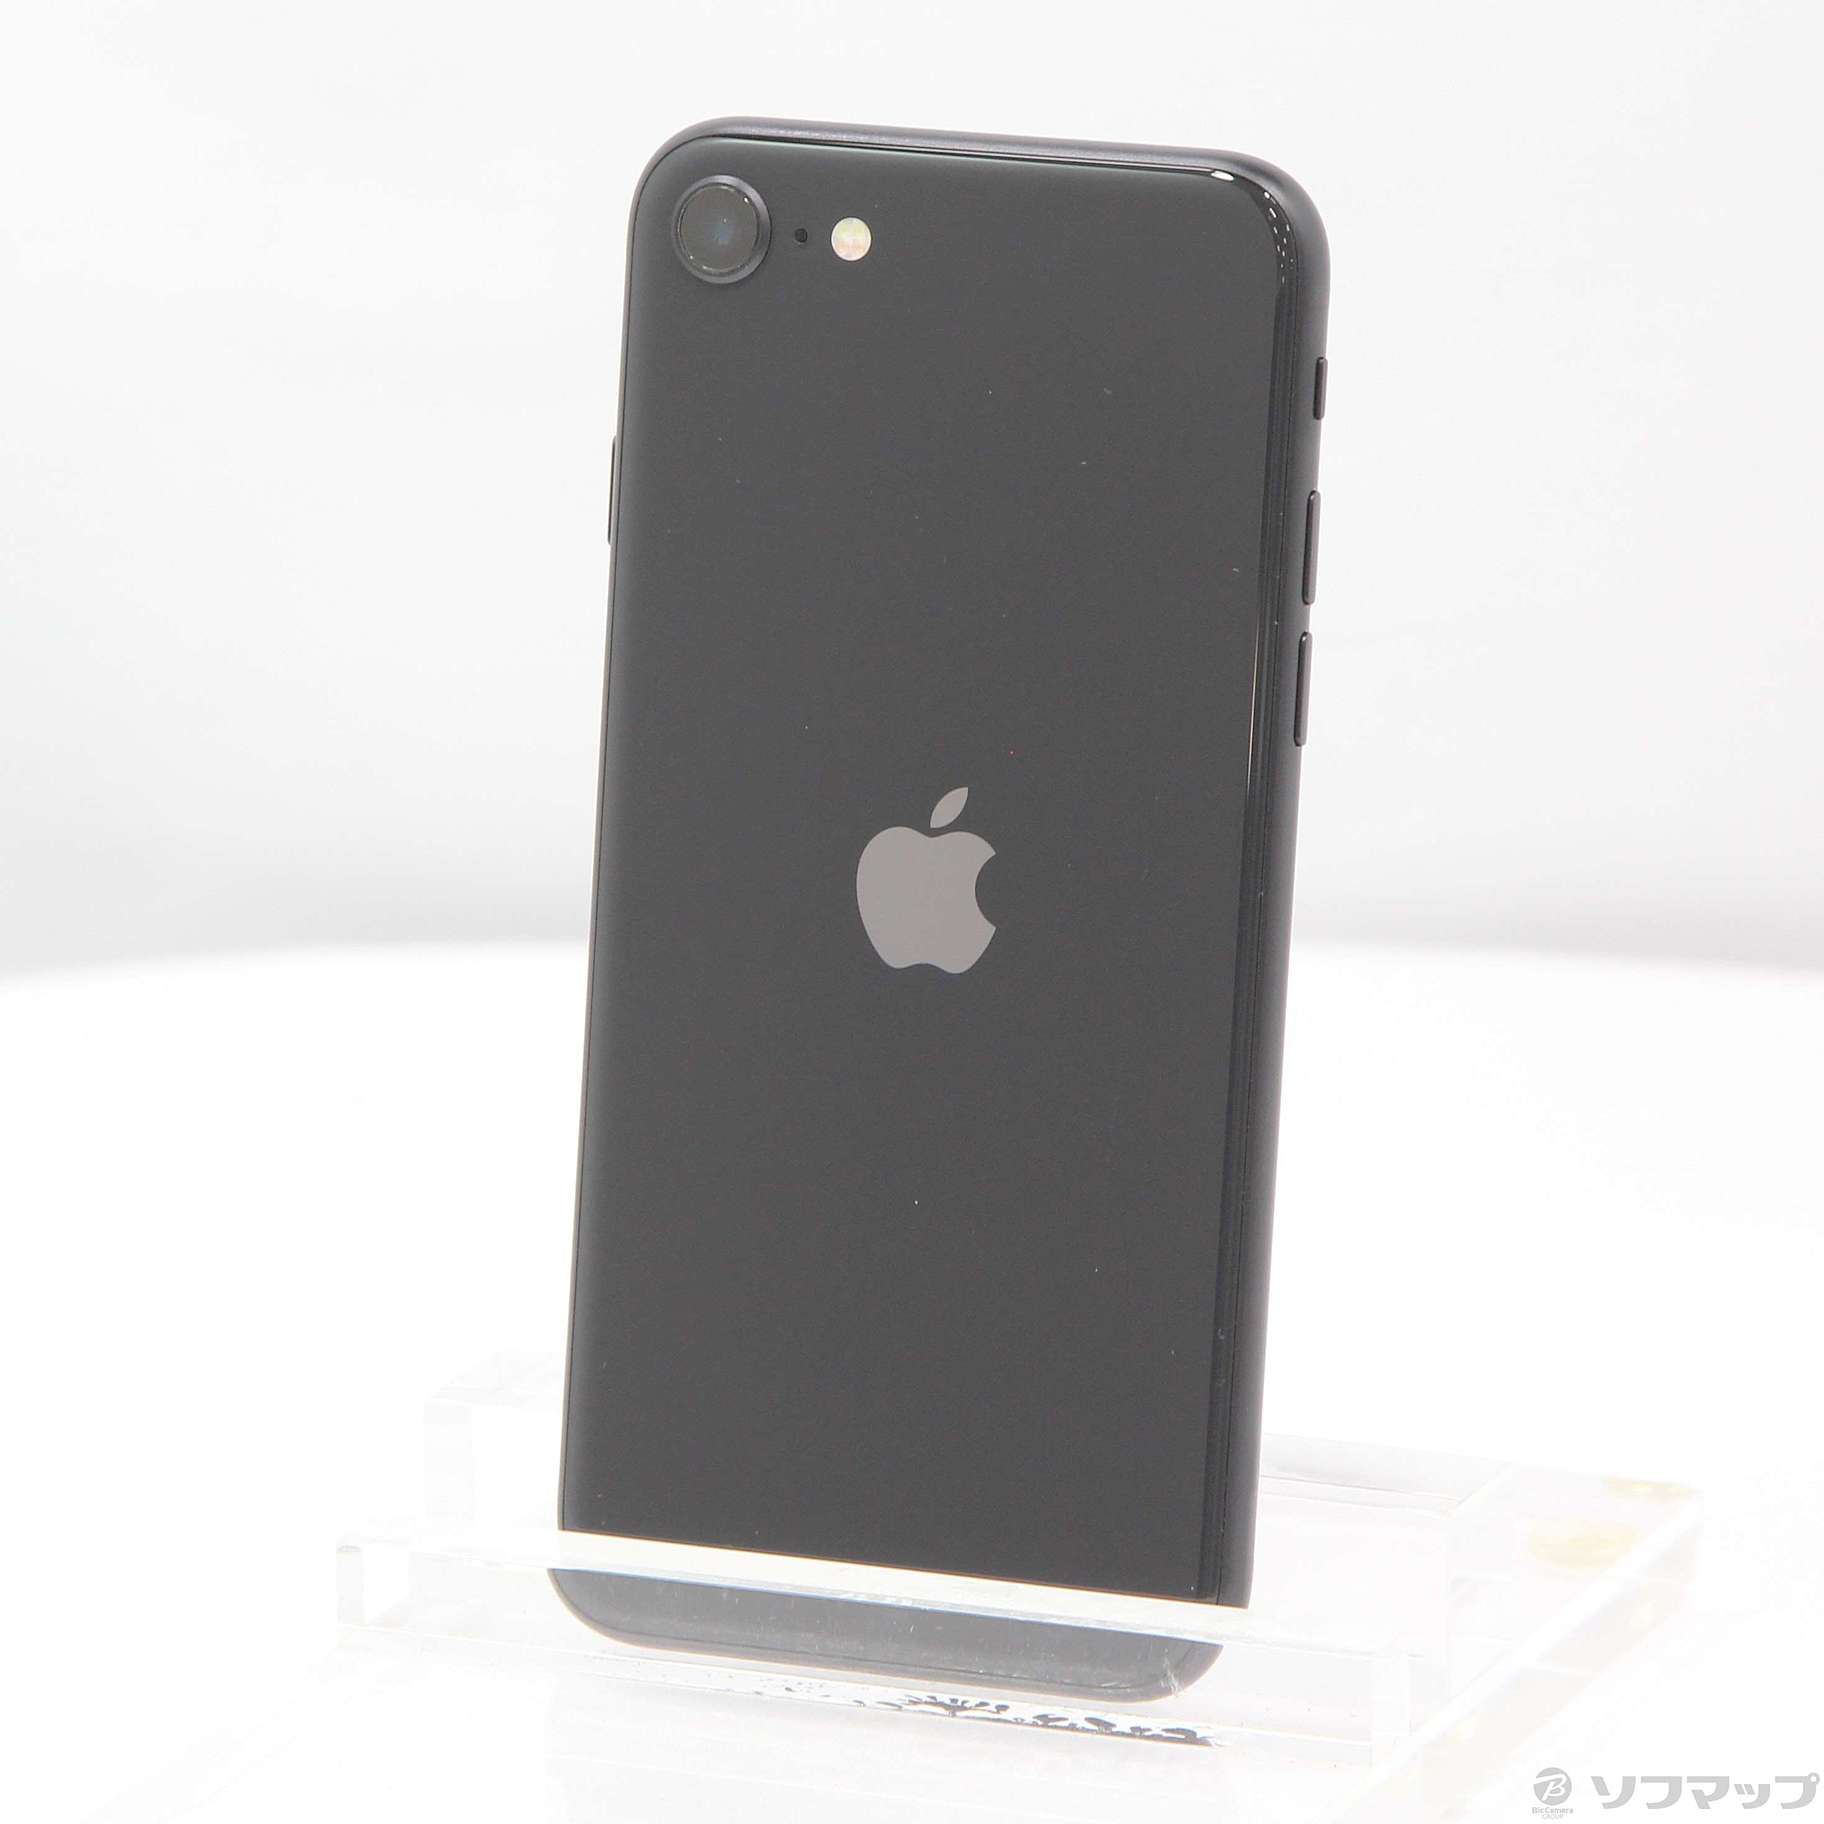 アップル iPhoneSE 第2世代 64GB SIMフリー